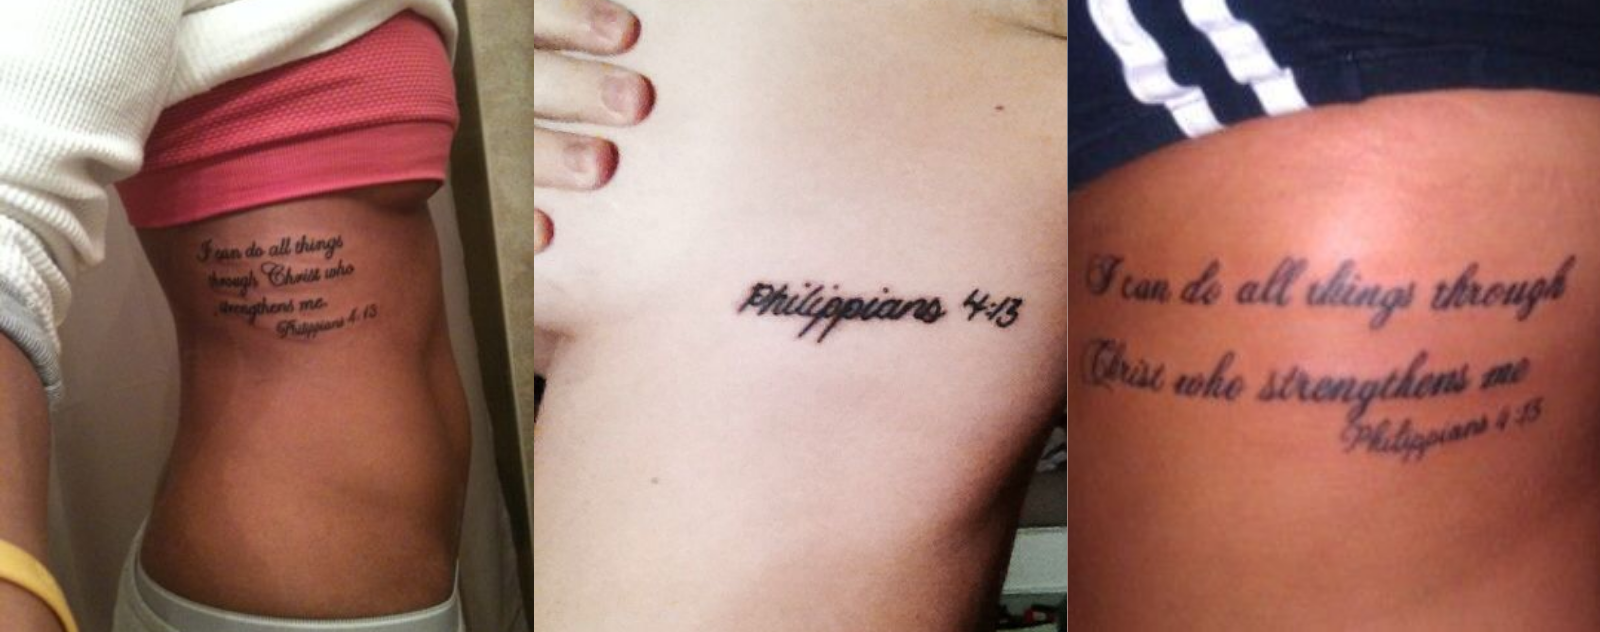 philippians-4-13-tattoo-ribs-3